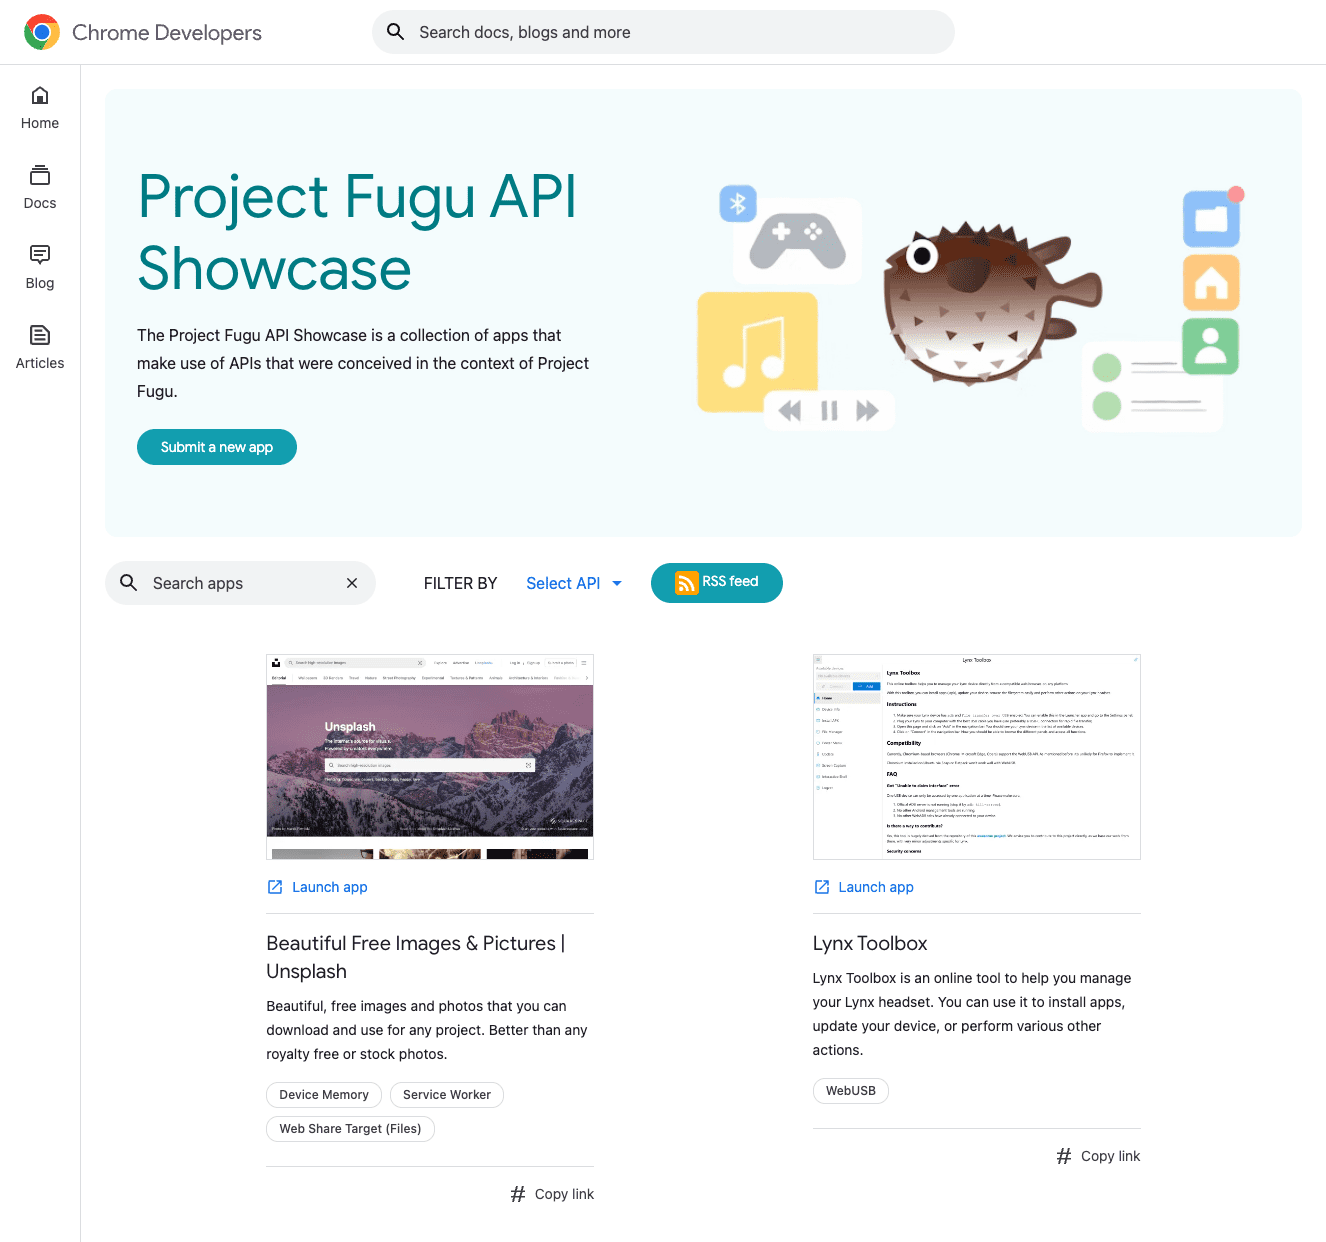 The Project Fugu API Showcase.